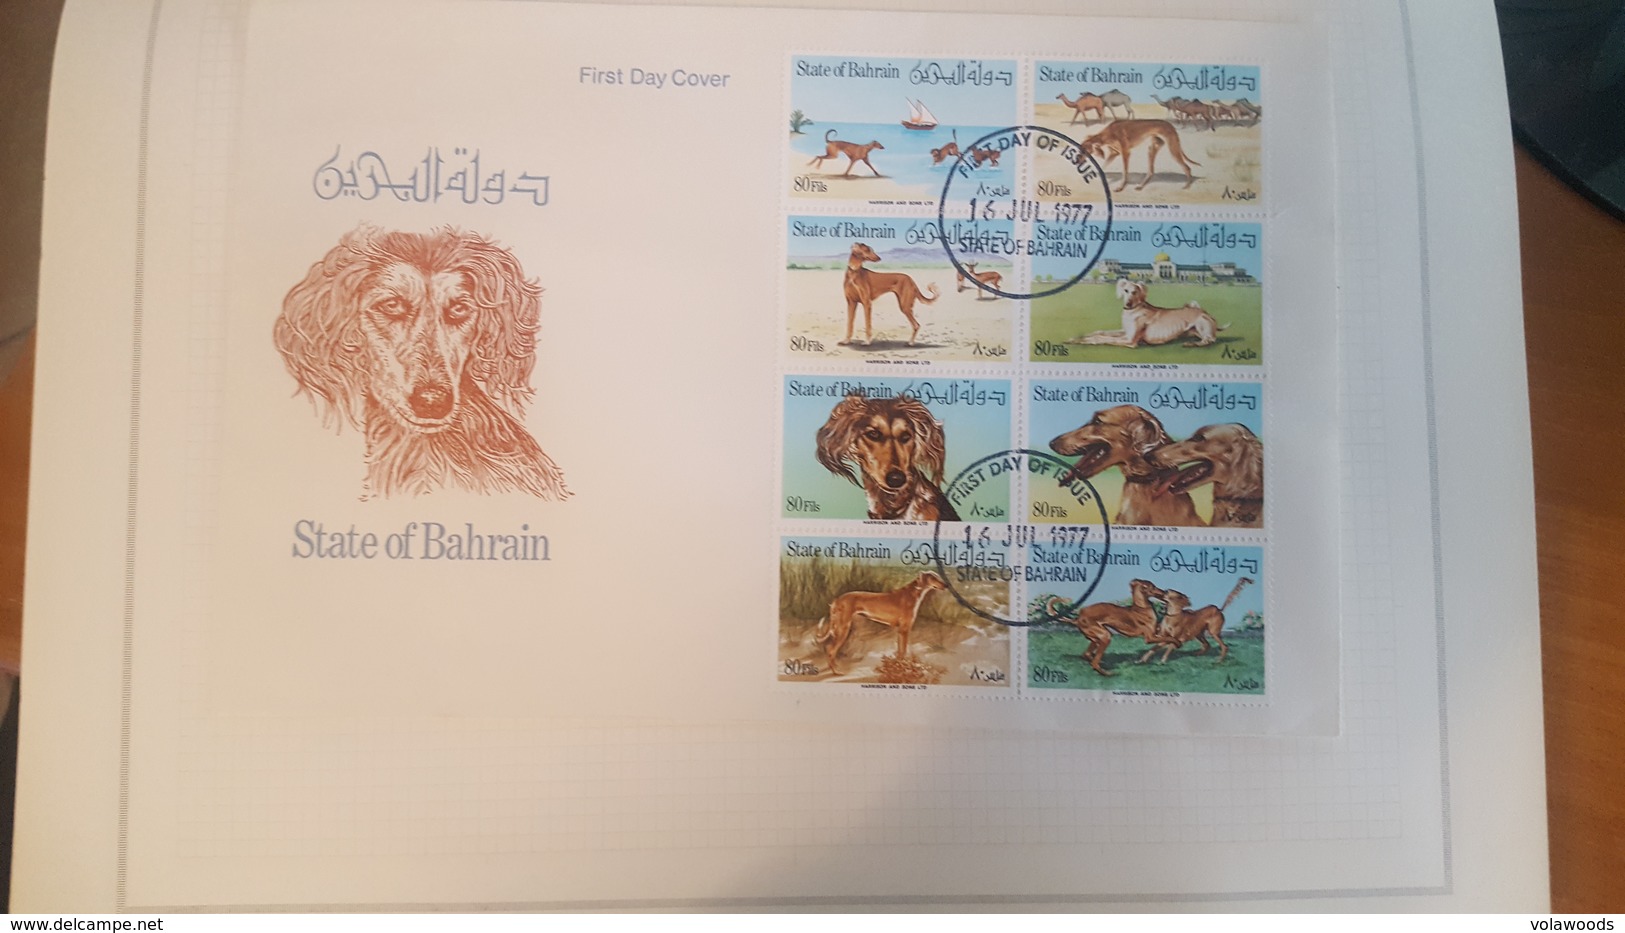 Raccoglitore artigianale con francobolli di Asia - Africa - Oceania - America - Solo alcune foto rappresentate